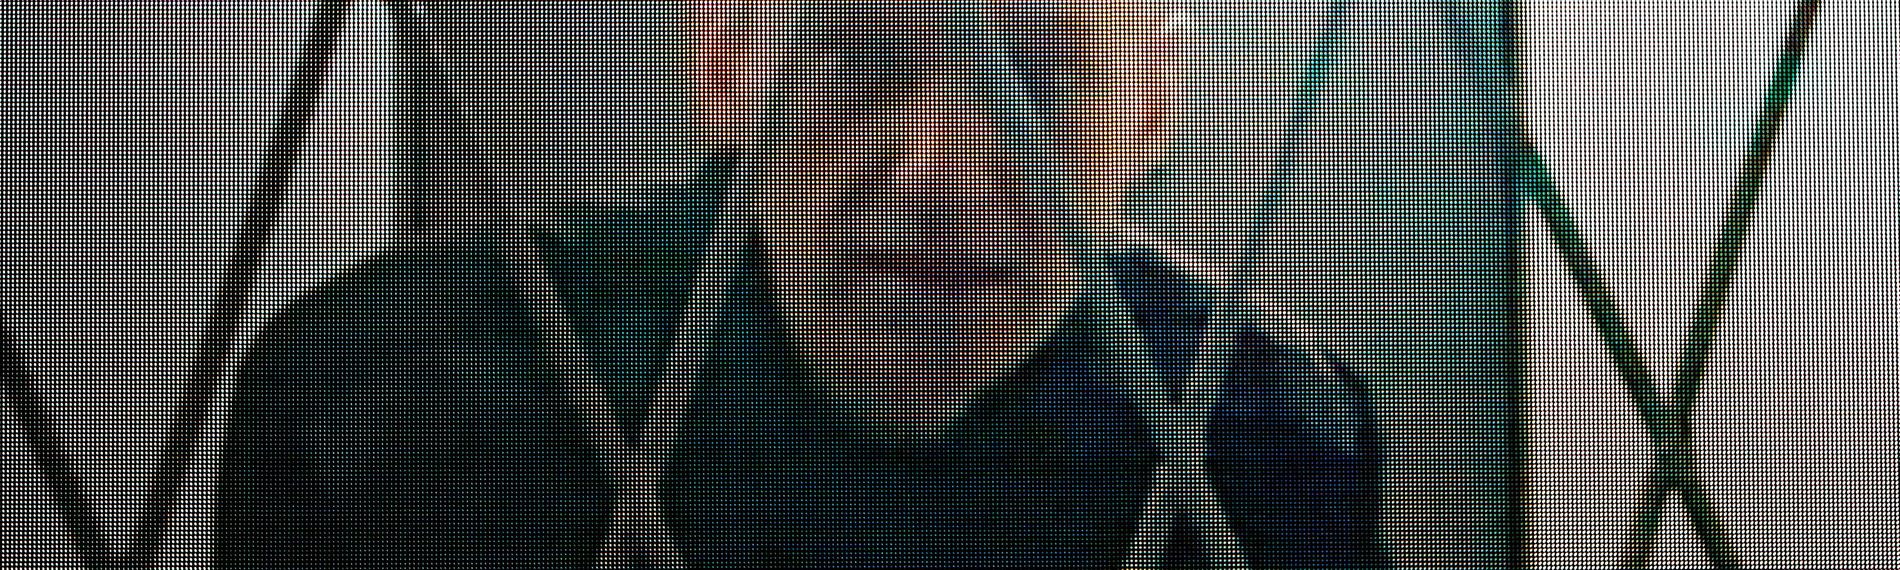 Ein Mann mit kahlgeschorenem Kopf sitzt hinter einem Gitter.